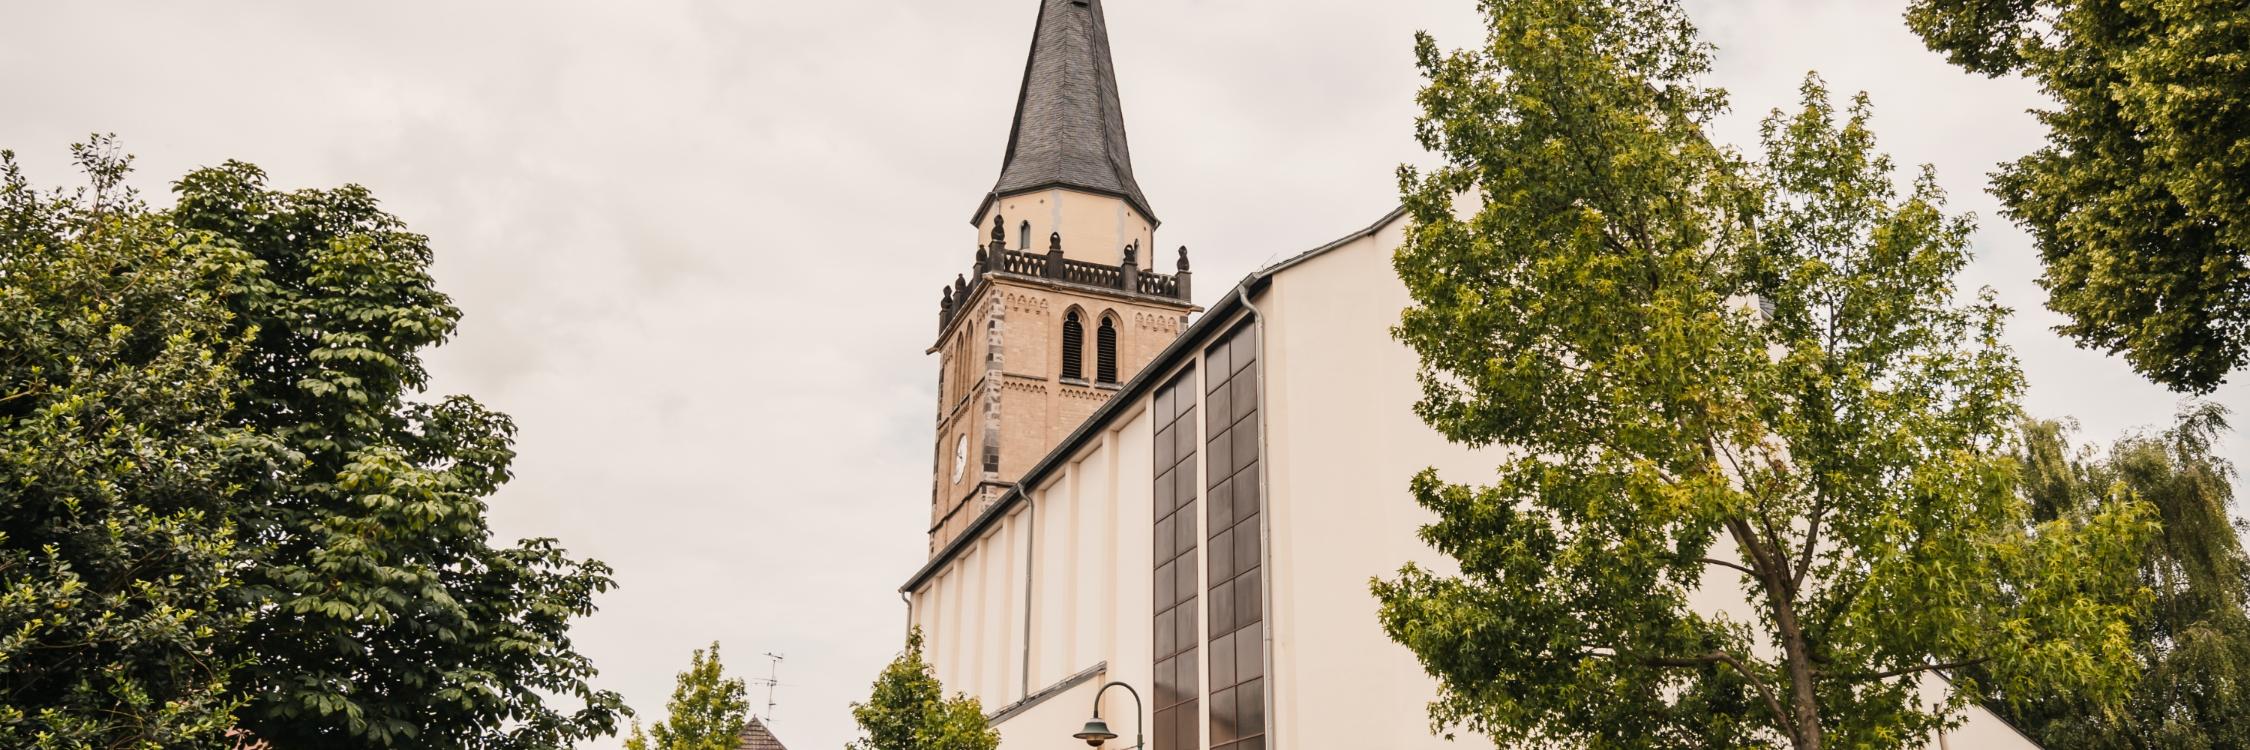 Kirche außen Straße